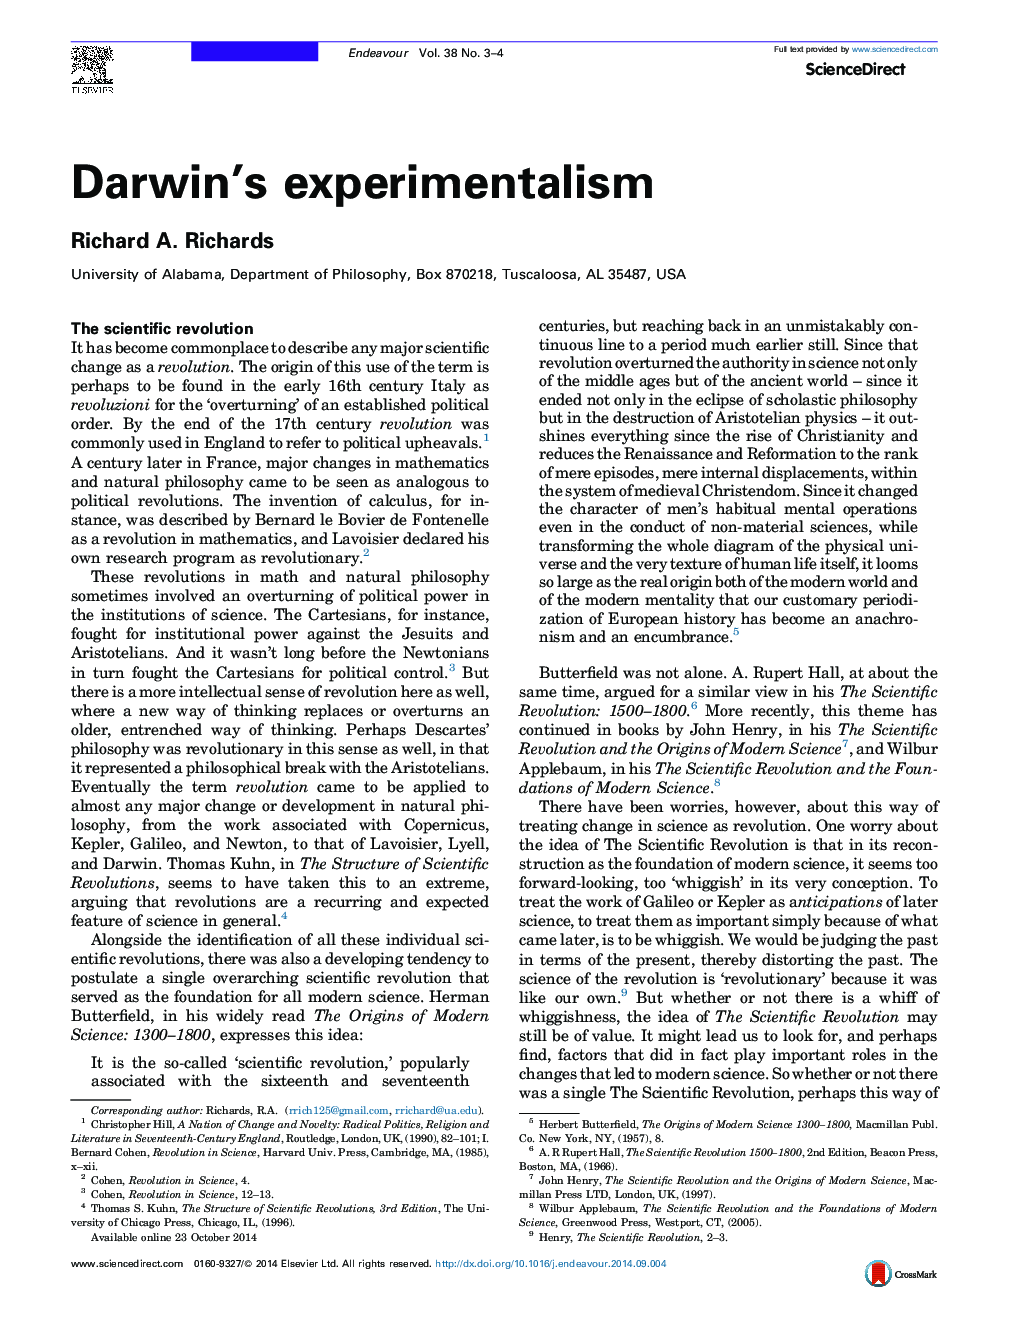 آزمایش تجربی داروین 